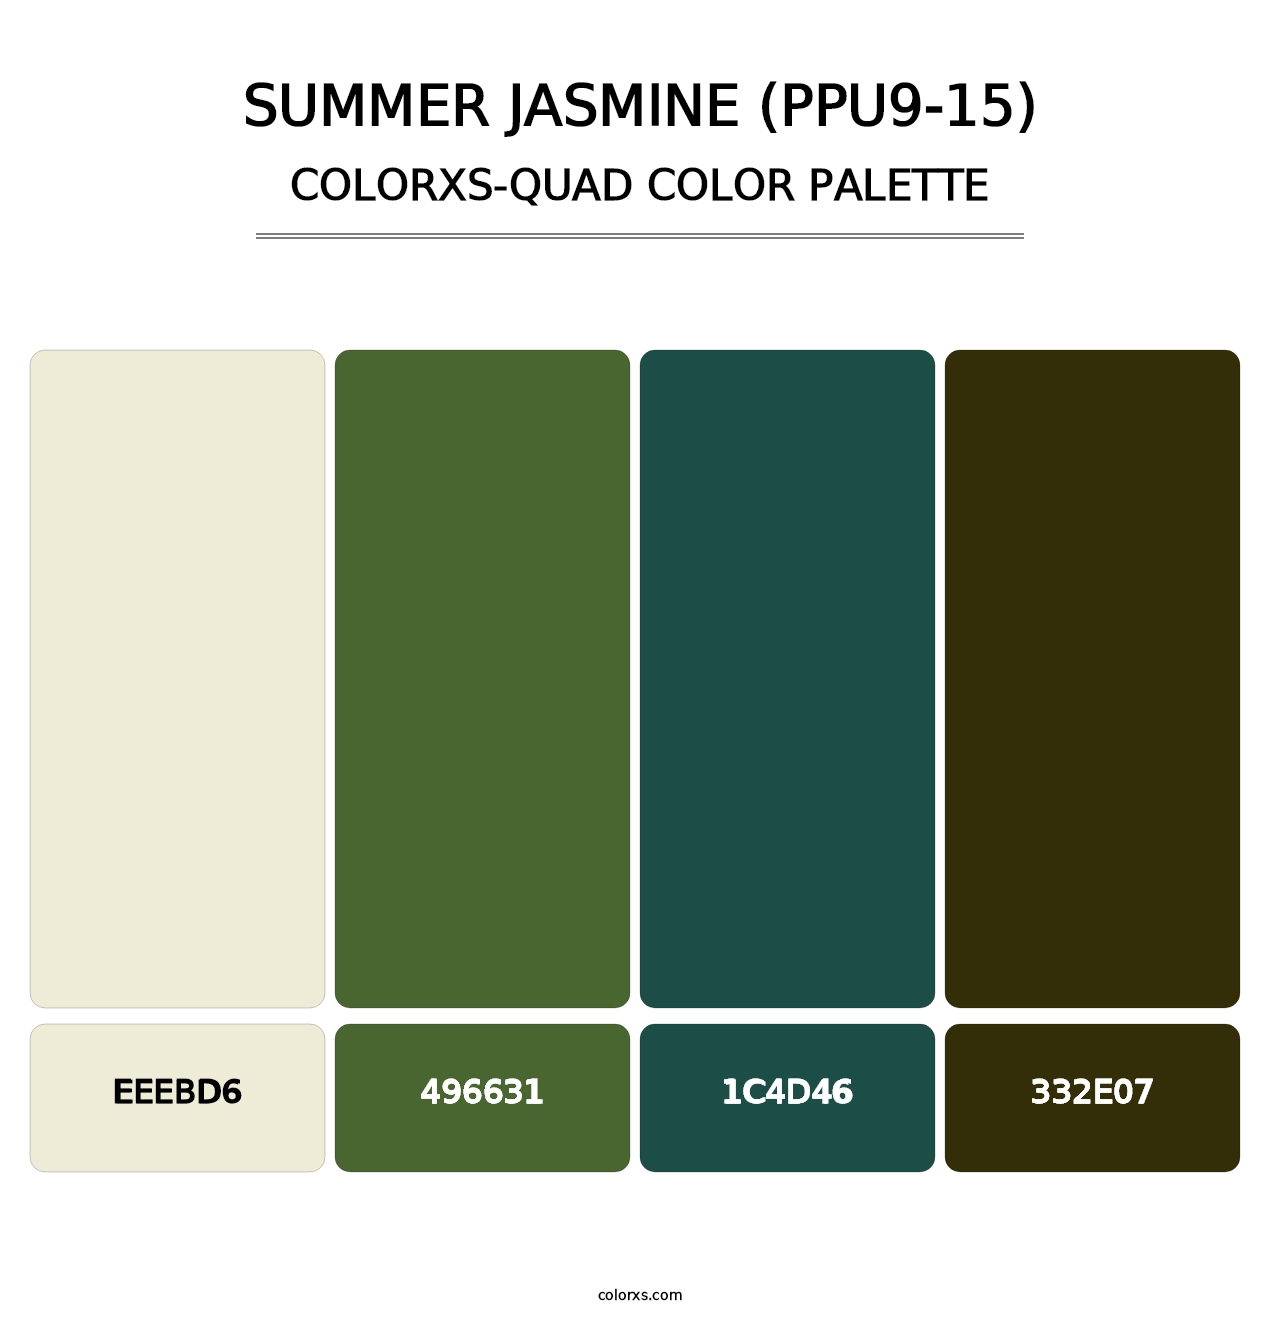 Summer Jasmine (PPU9-15) - Colorxs Quad Palette